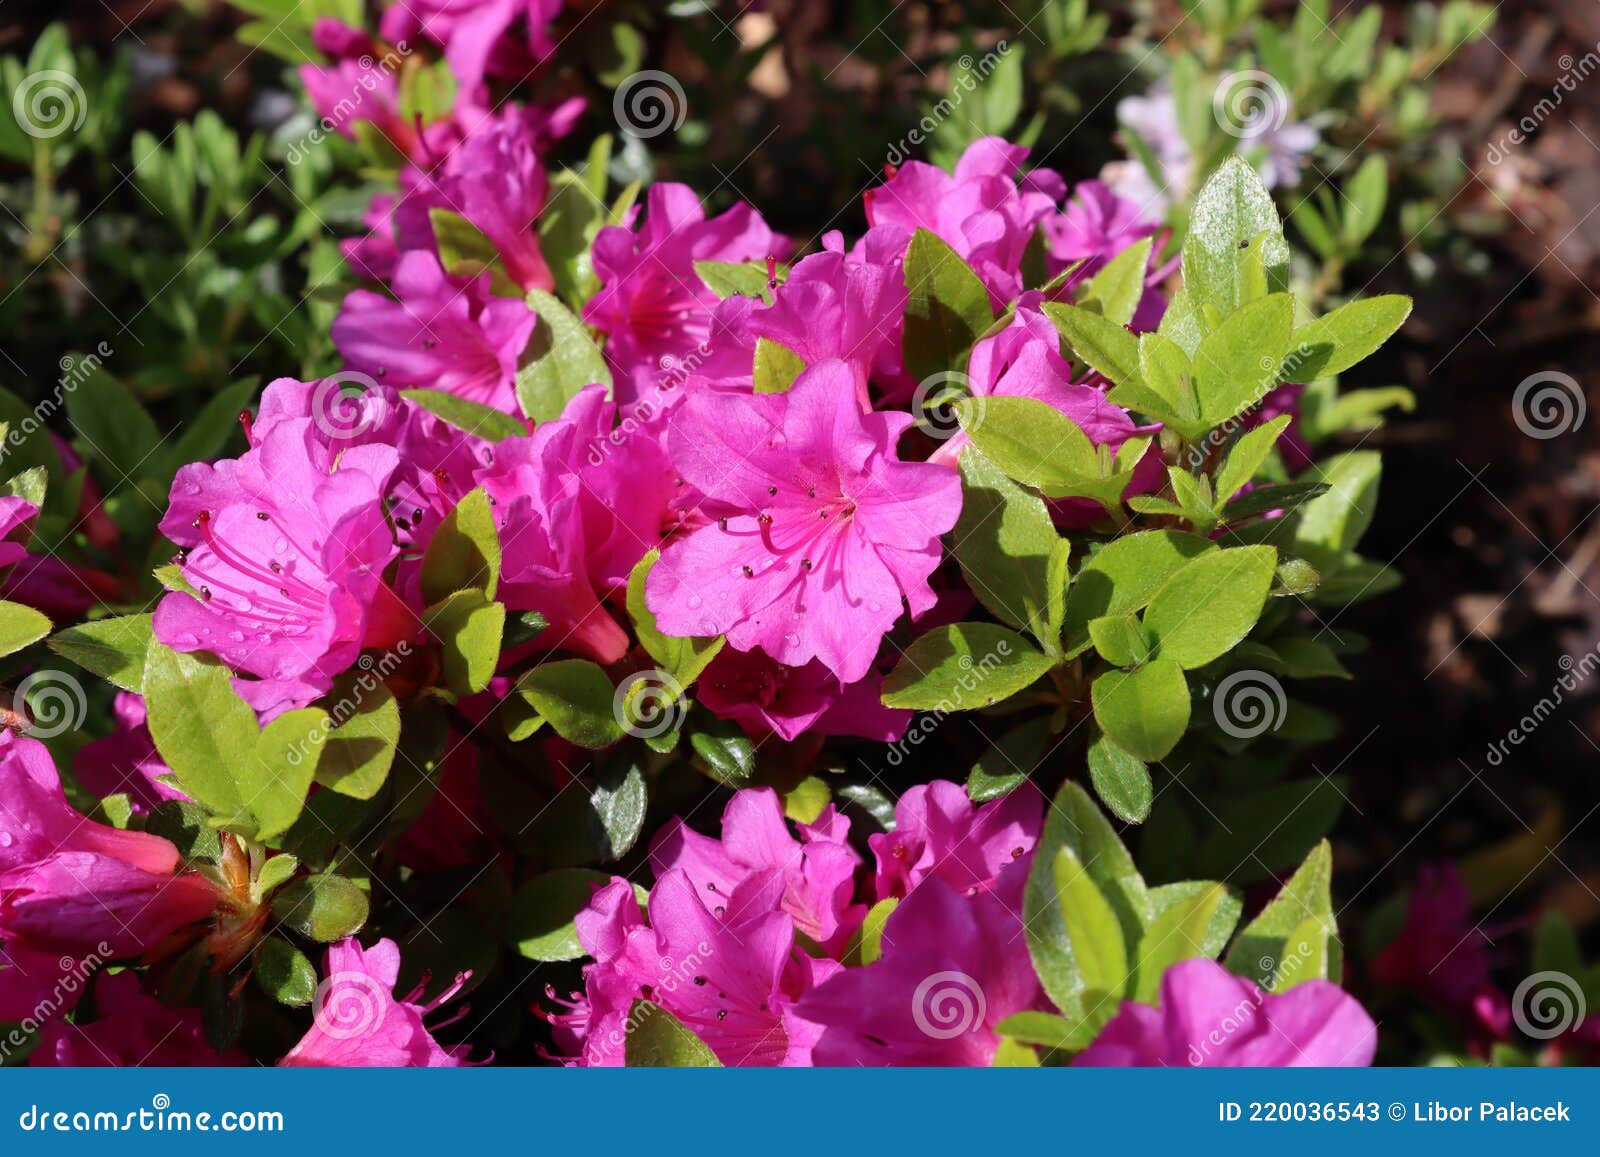 Arbusto Azalea Siempreverde Floración Rosa Violeta. Azalea Rododendron  Imagen de archivo - Imagen de flora, azalea: 220036543